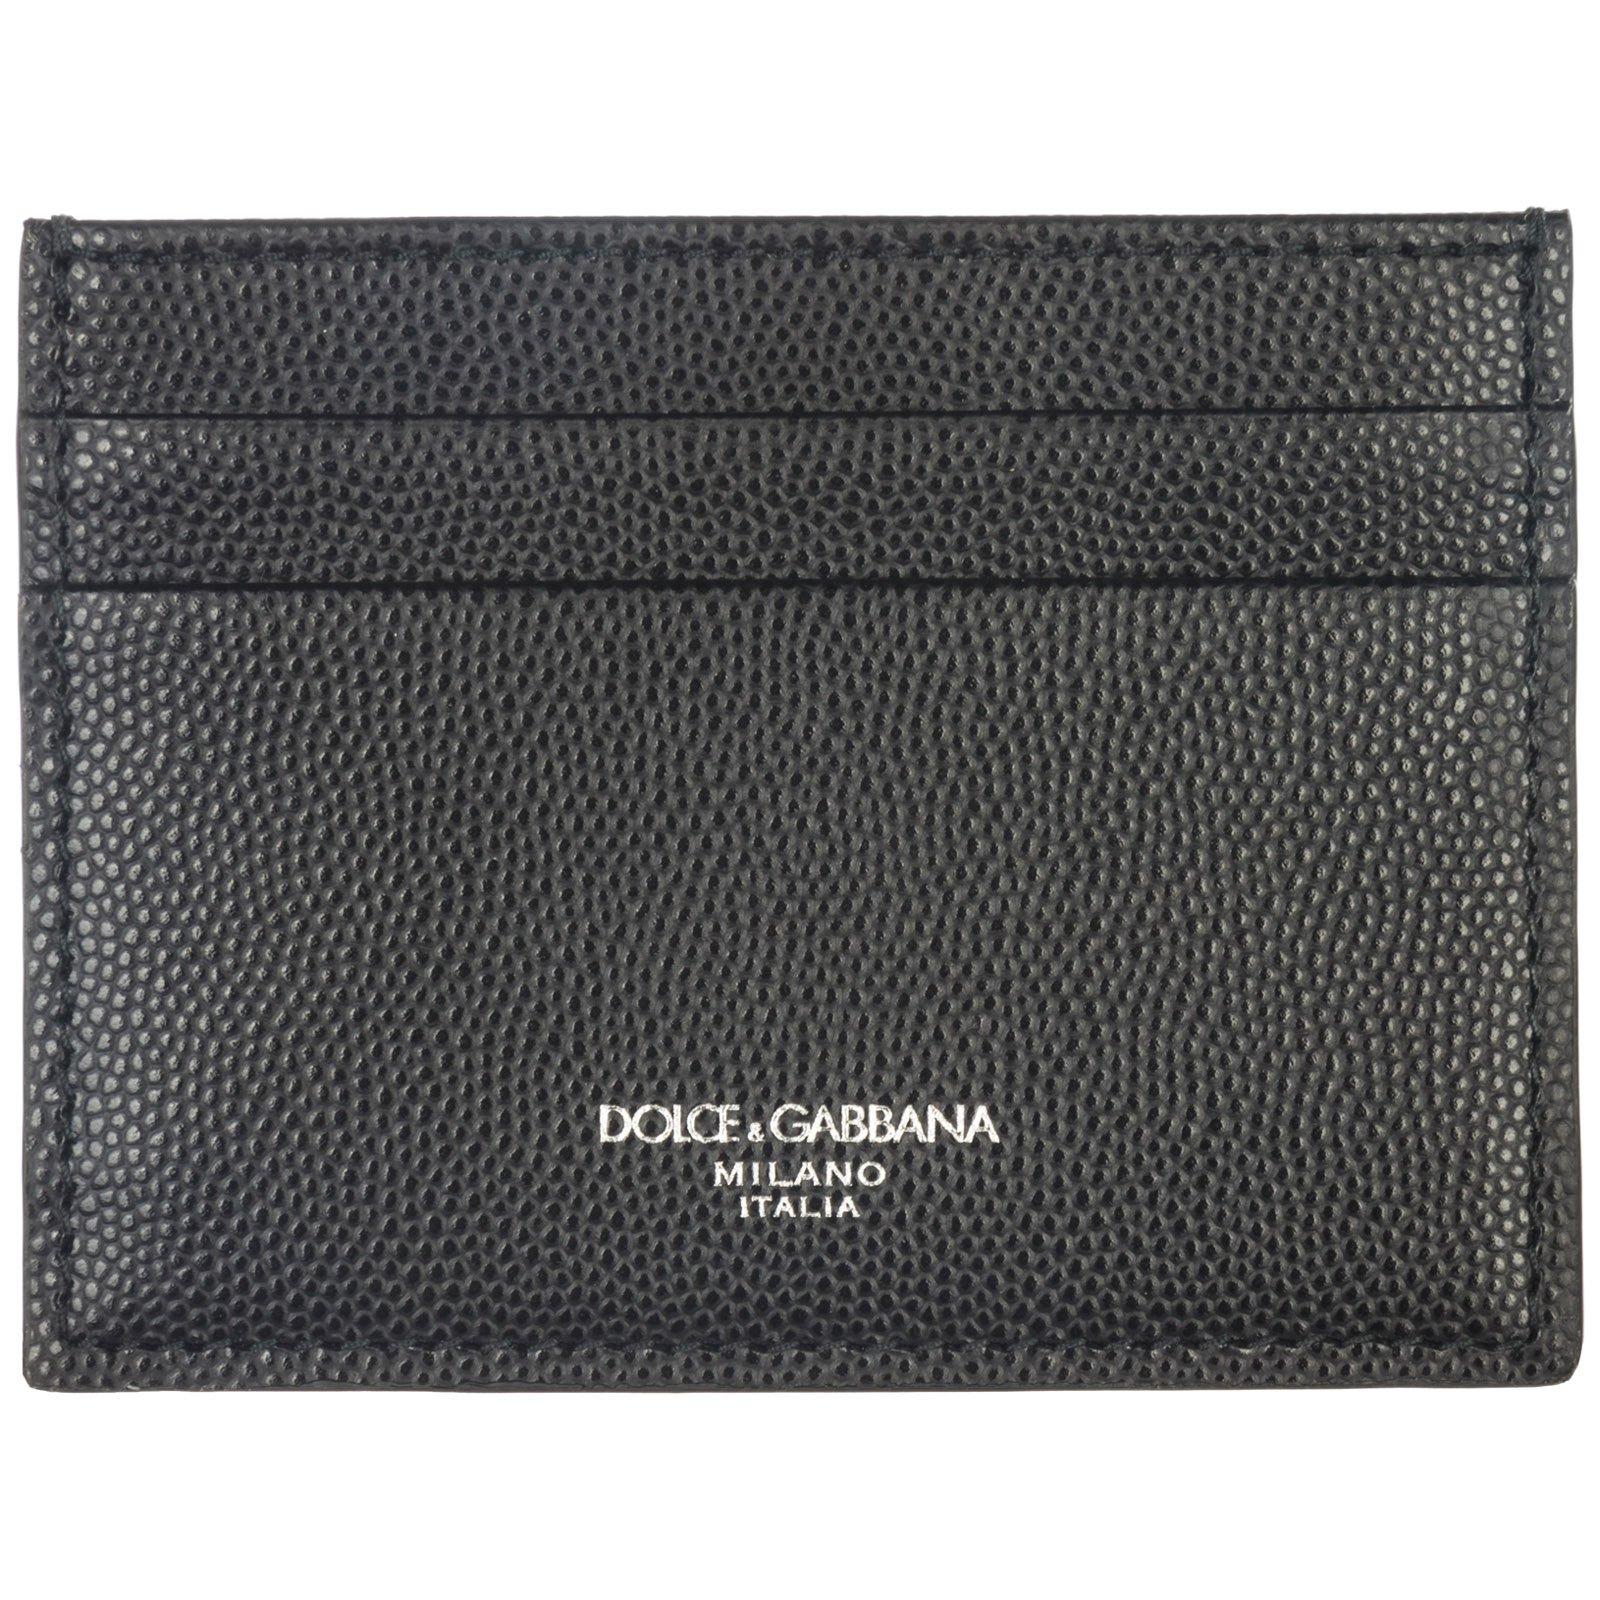 Dolce & Gabbana Logo Plain Cardholder in Black for Men - Lyst